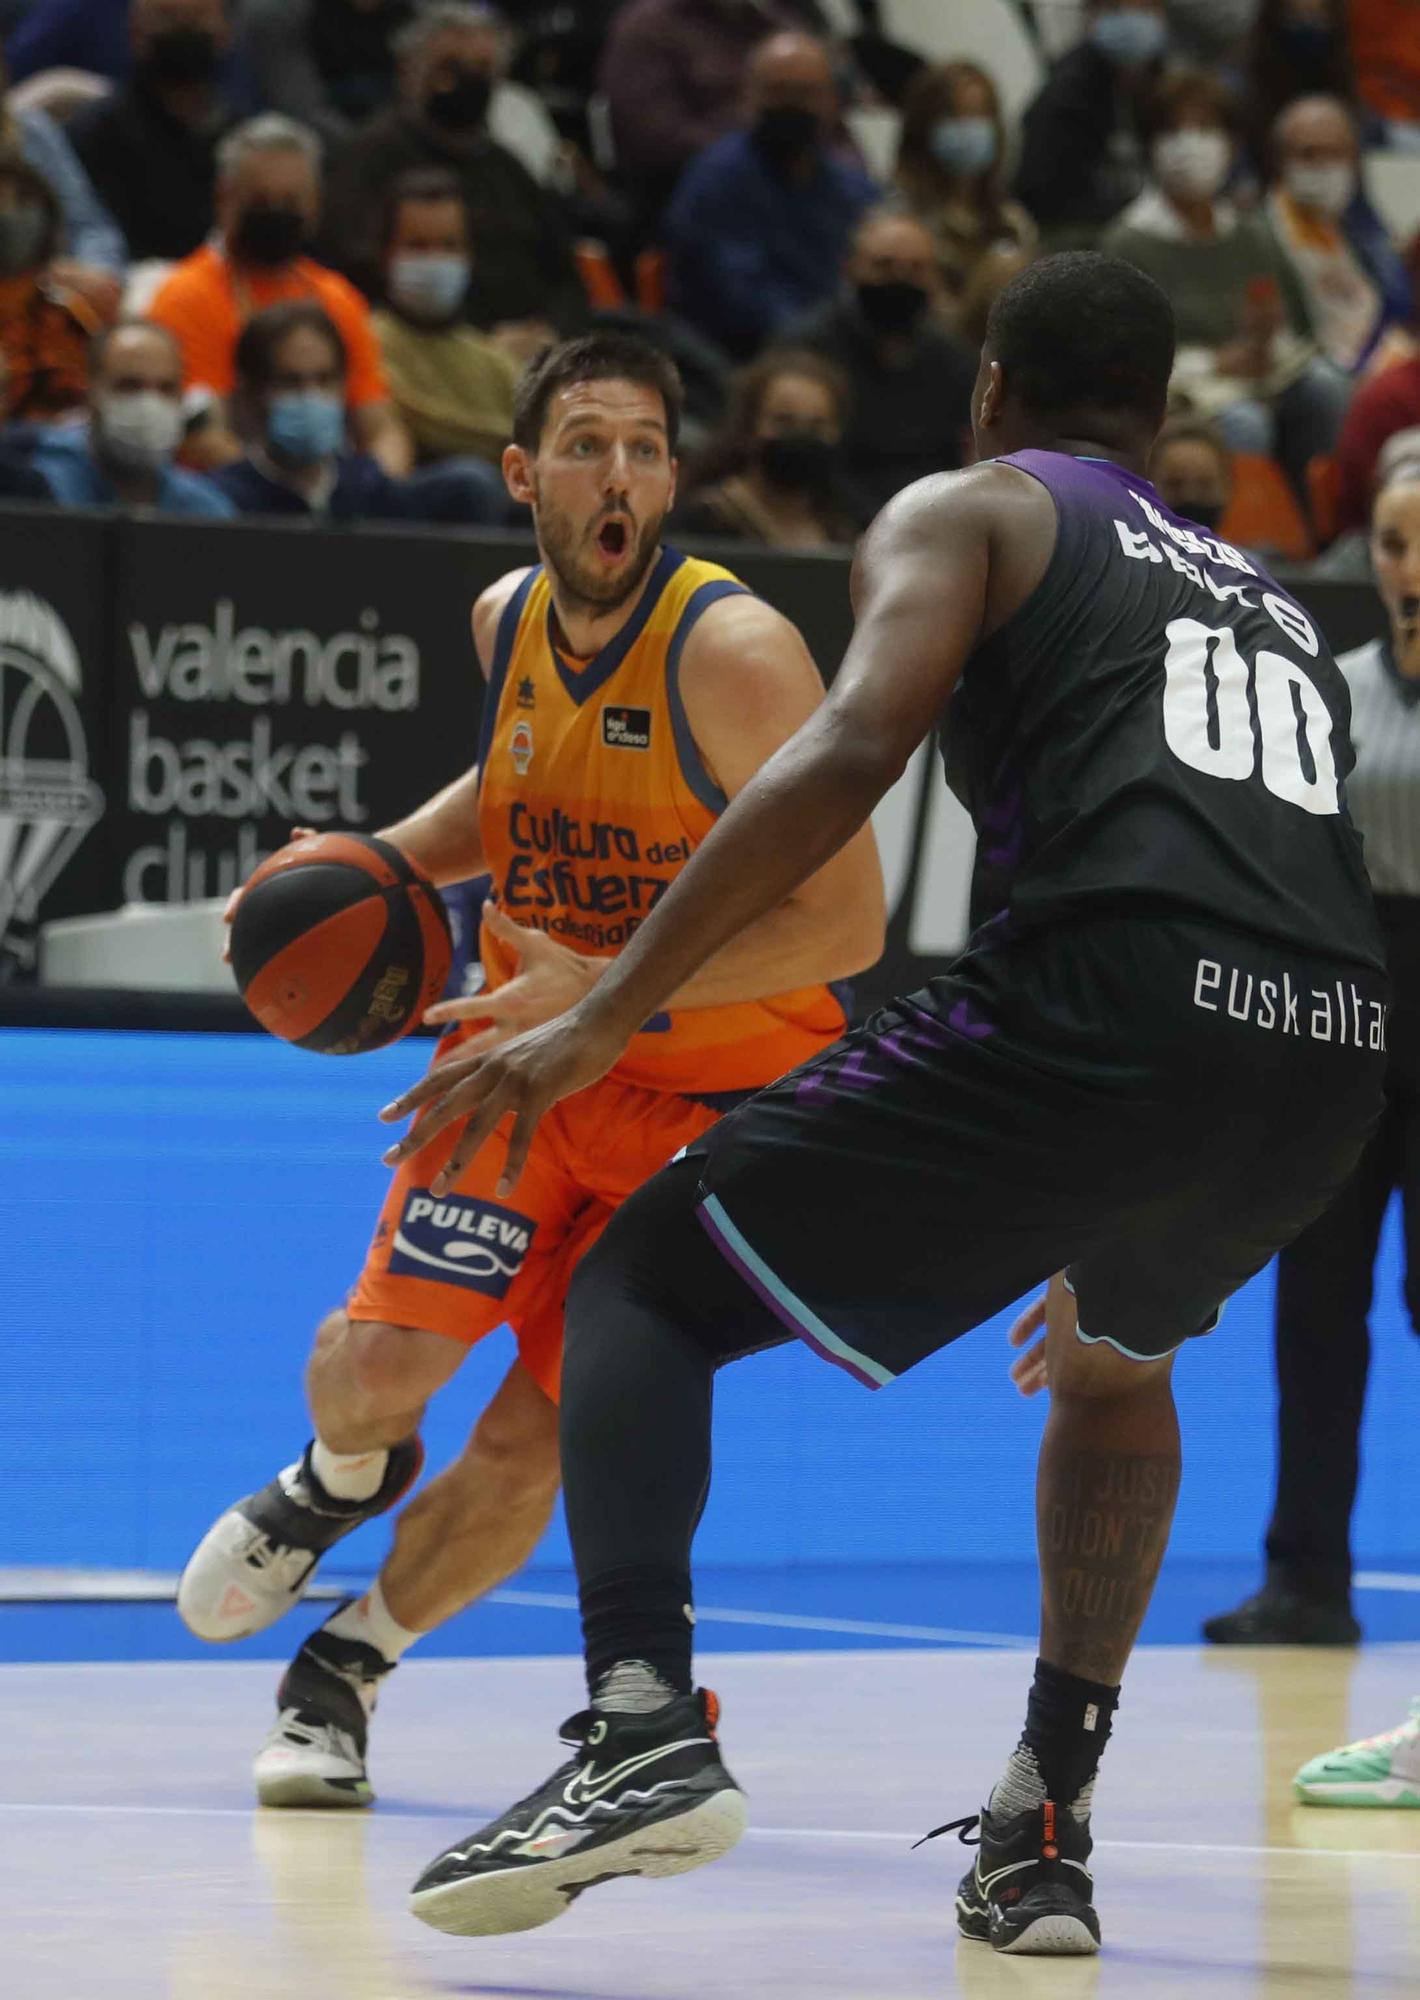 Espectacular remontada de Valencia Basket frente al Surne Bilbao